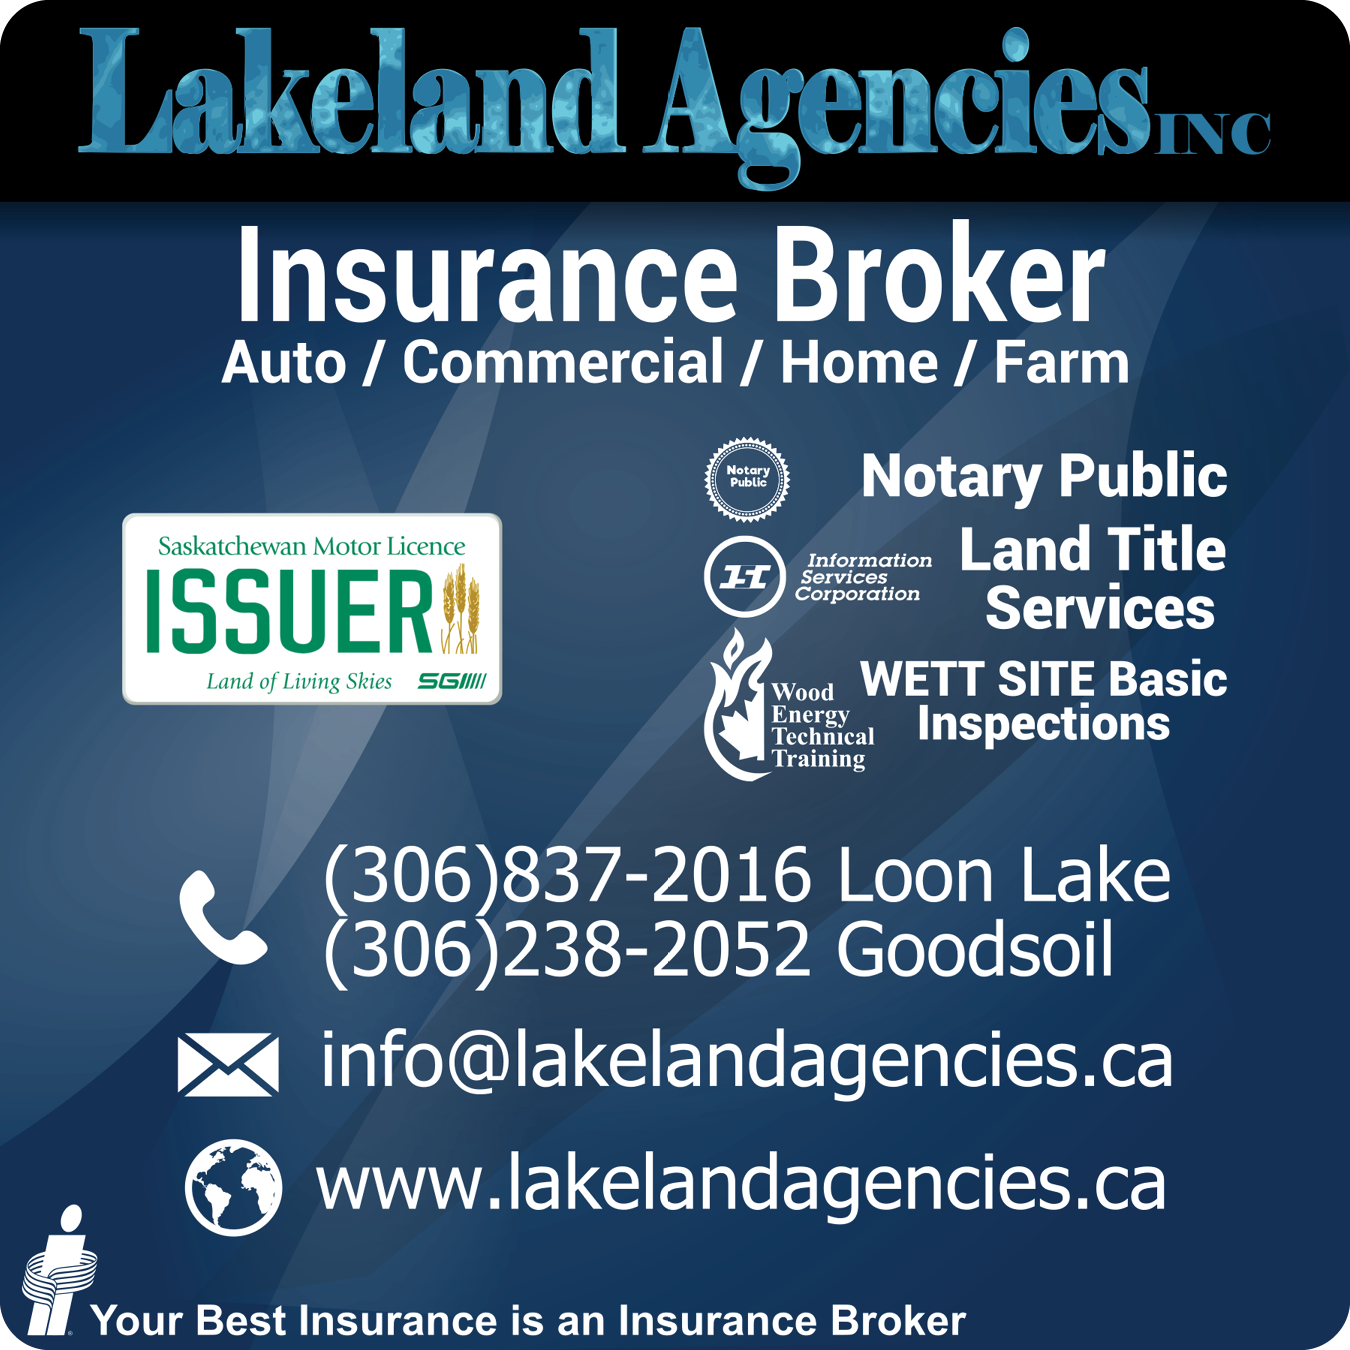 Lakeland Agencies